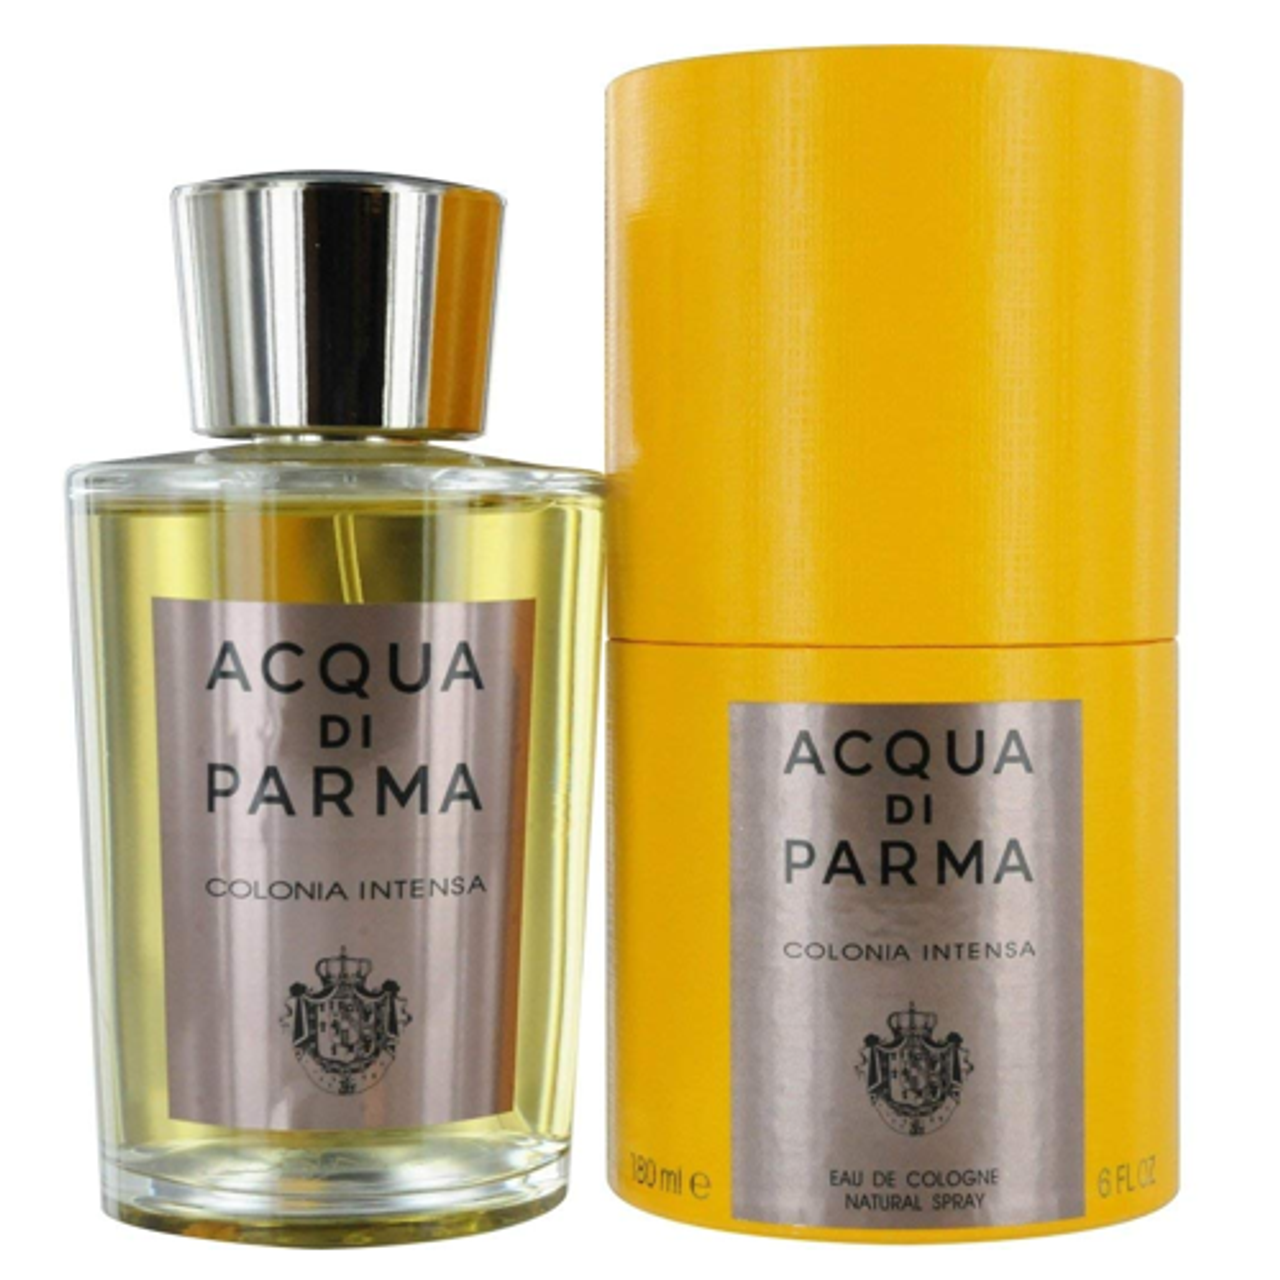 Acqua di Parma for oz Intensa - EDC Acqua Parma Men Colonia di by 6 ForeverLux